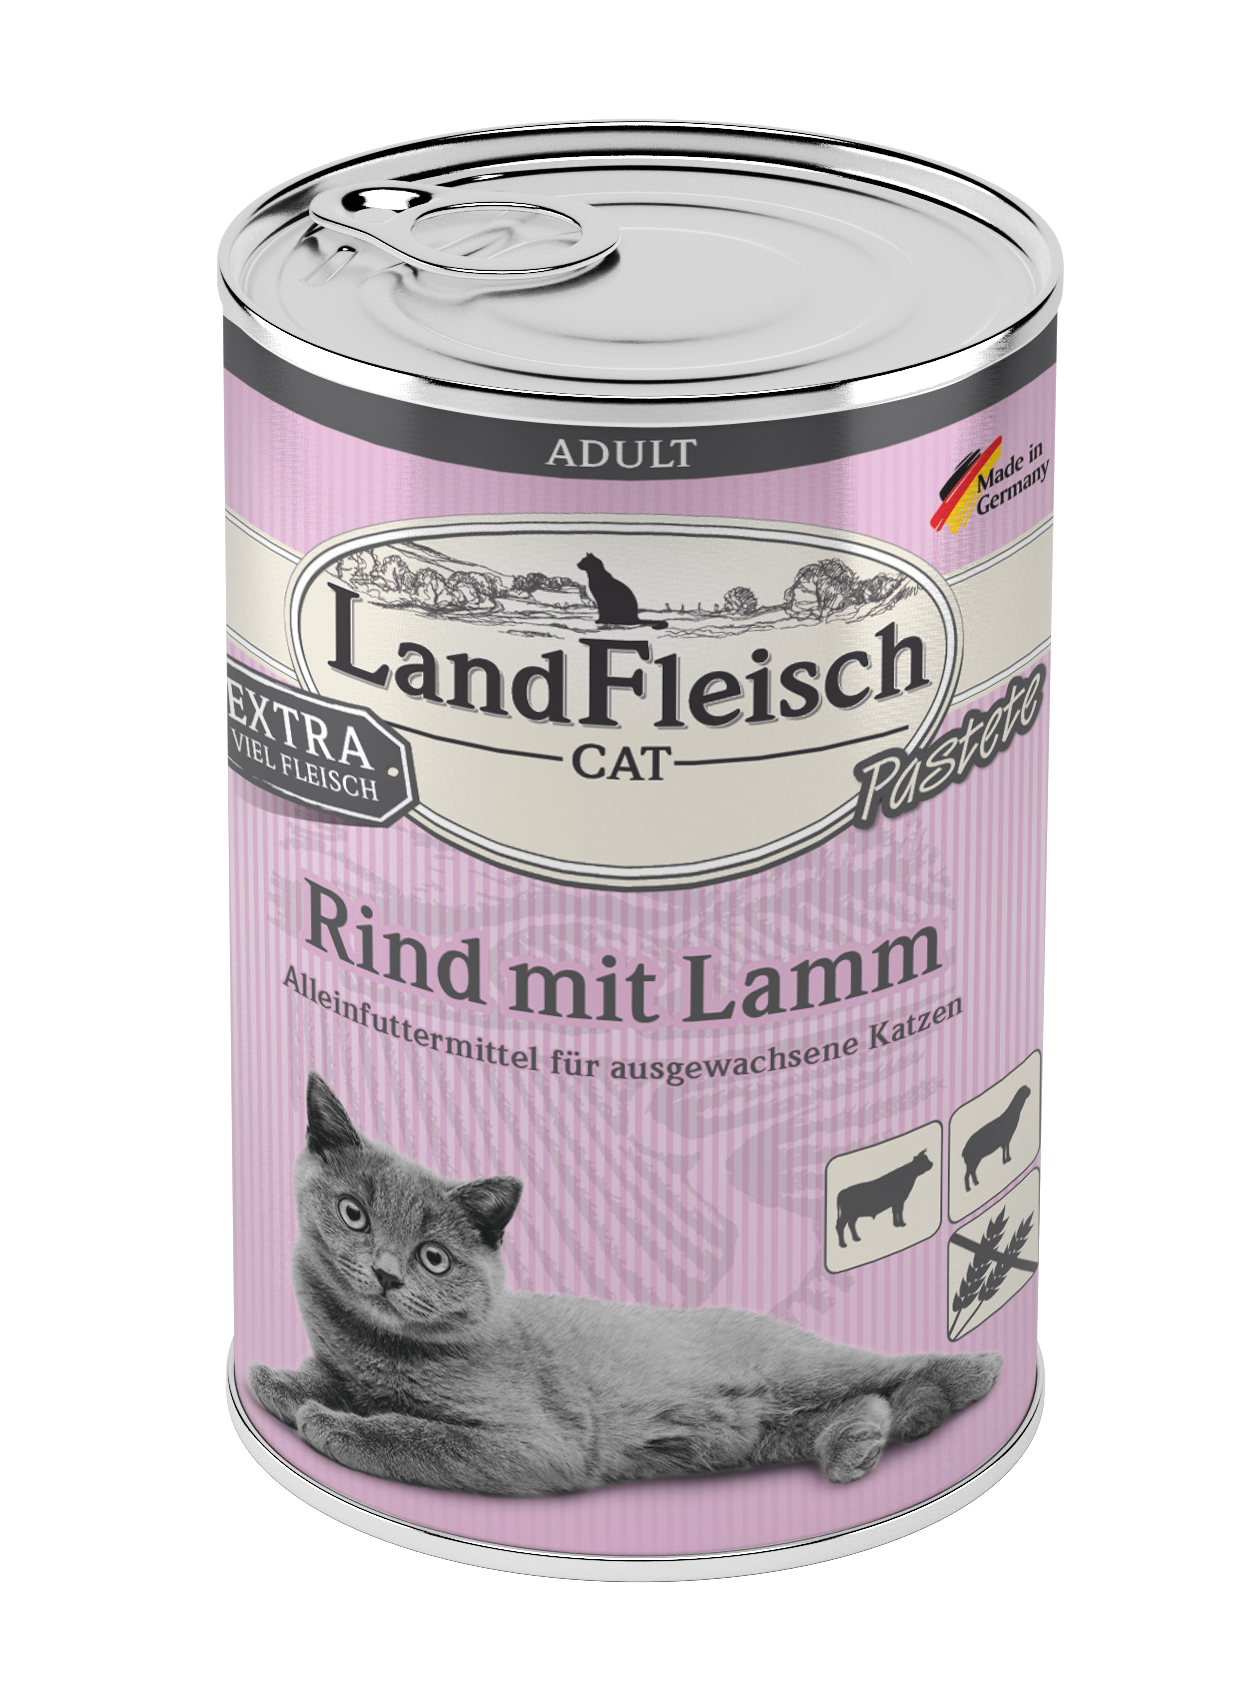 LandFleisch Cat Adult Pastete Rind mit Lamm 400g